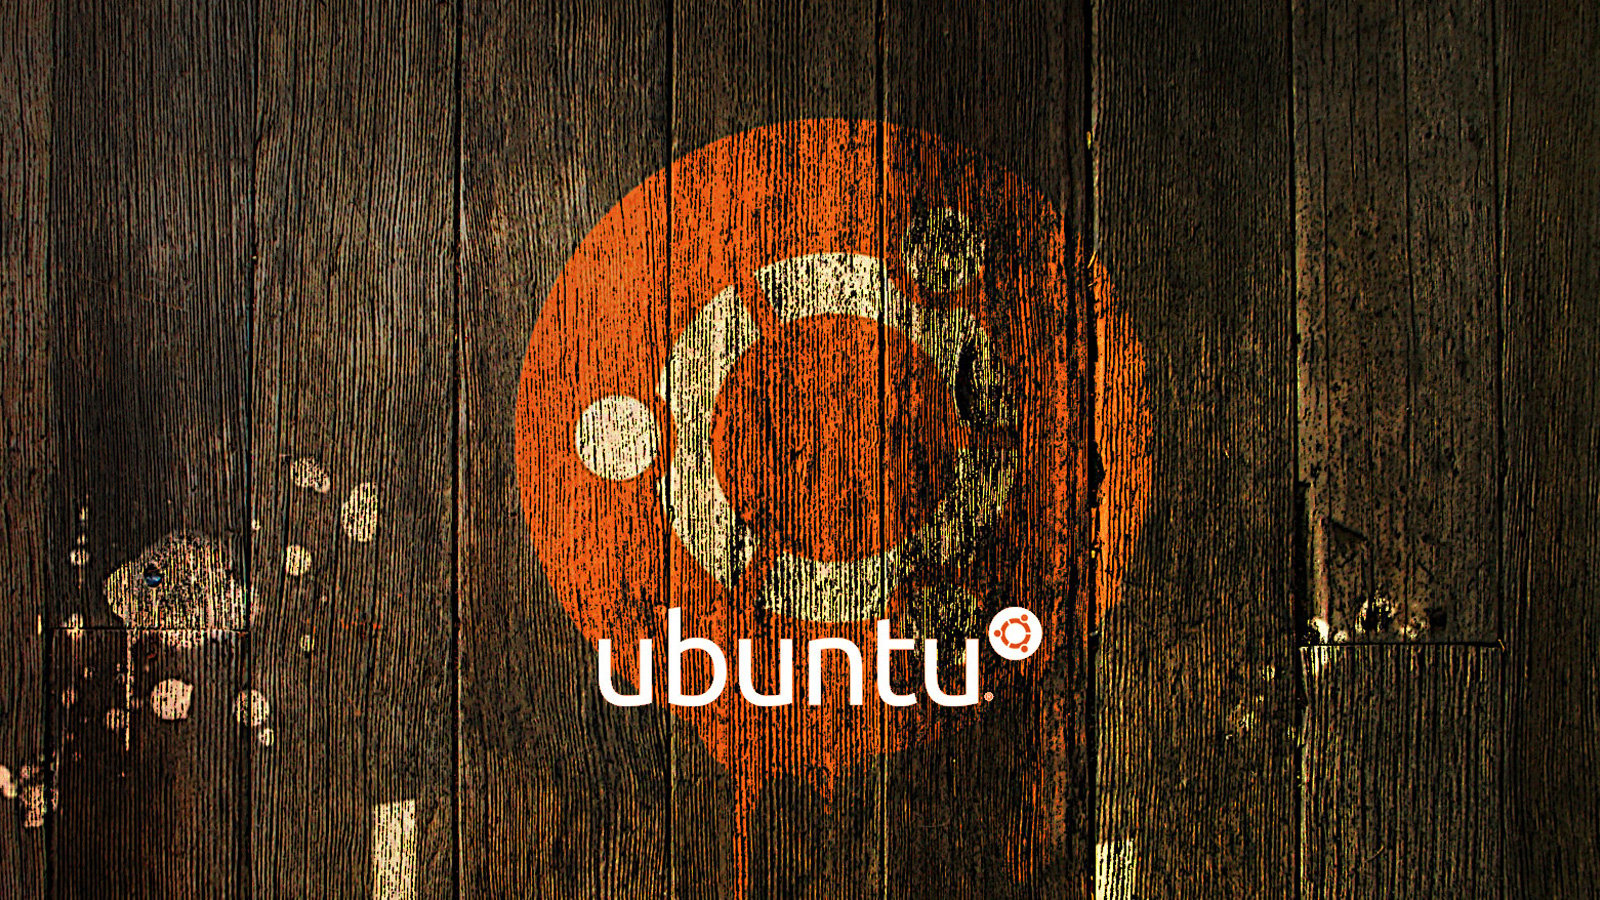 Ubuntu 6273-1: poppler vulnerabilities